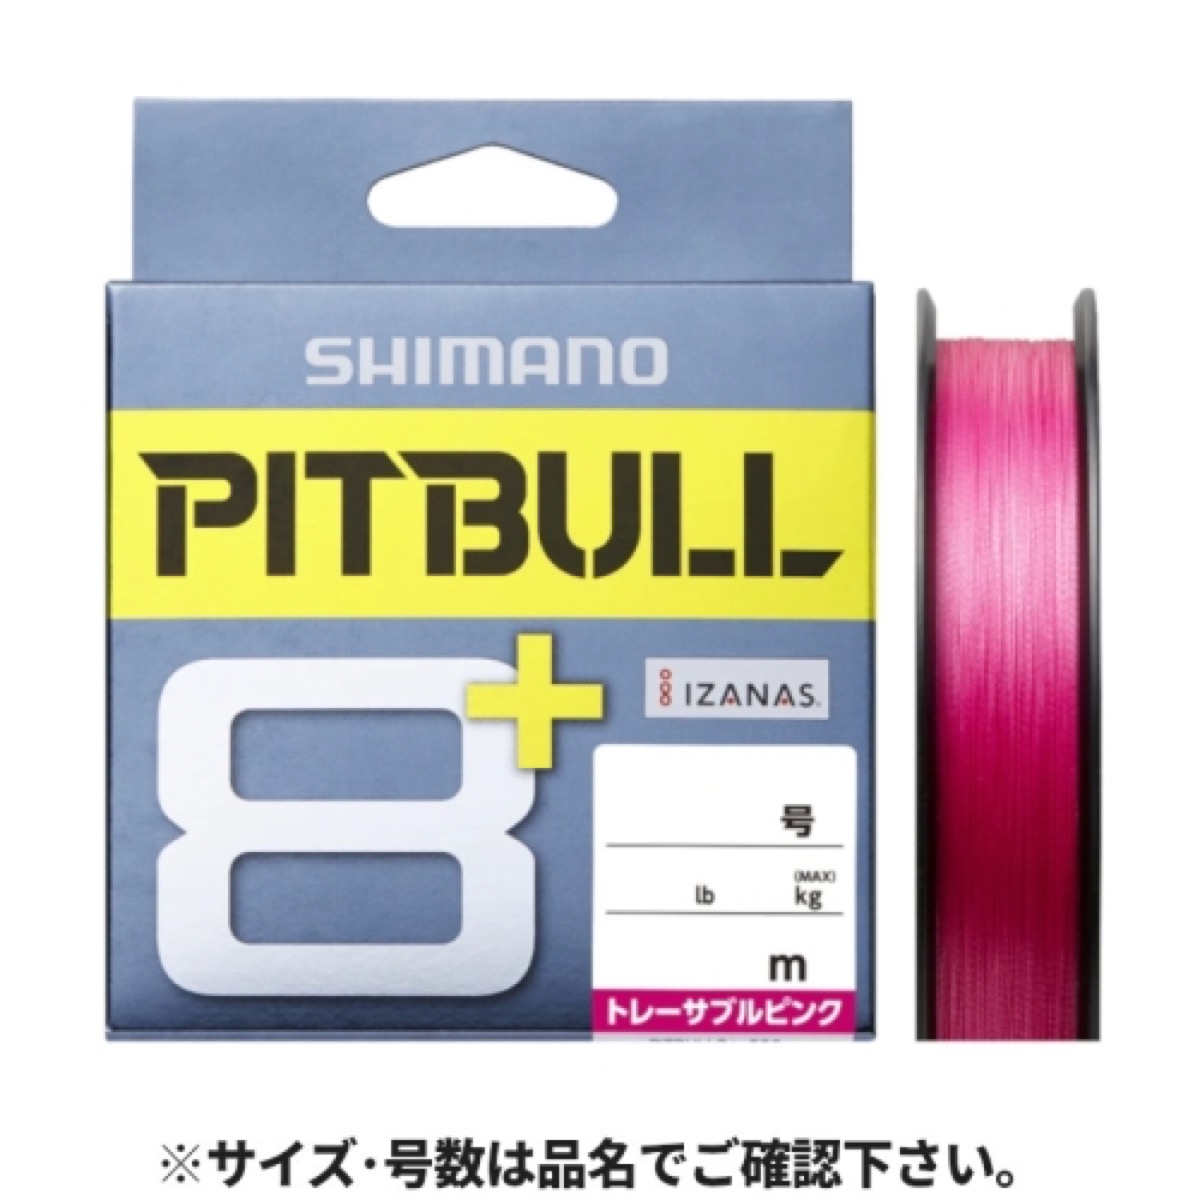 シマノ(SHIMANO) ピットブル8+ LD-M51T 150m 1.0号 トレーサブルピンク ネコポス(メール便)対象商品